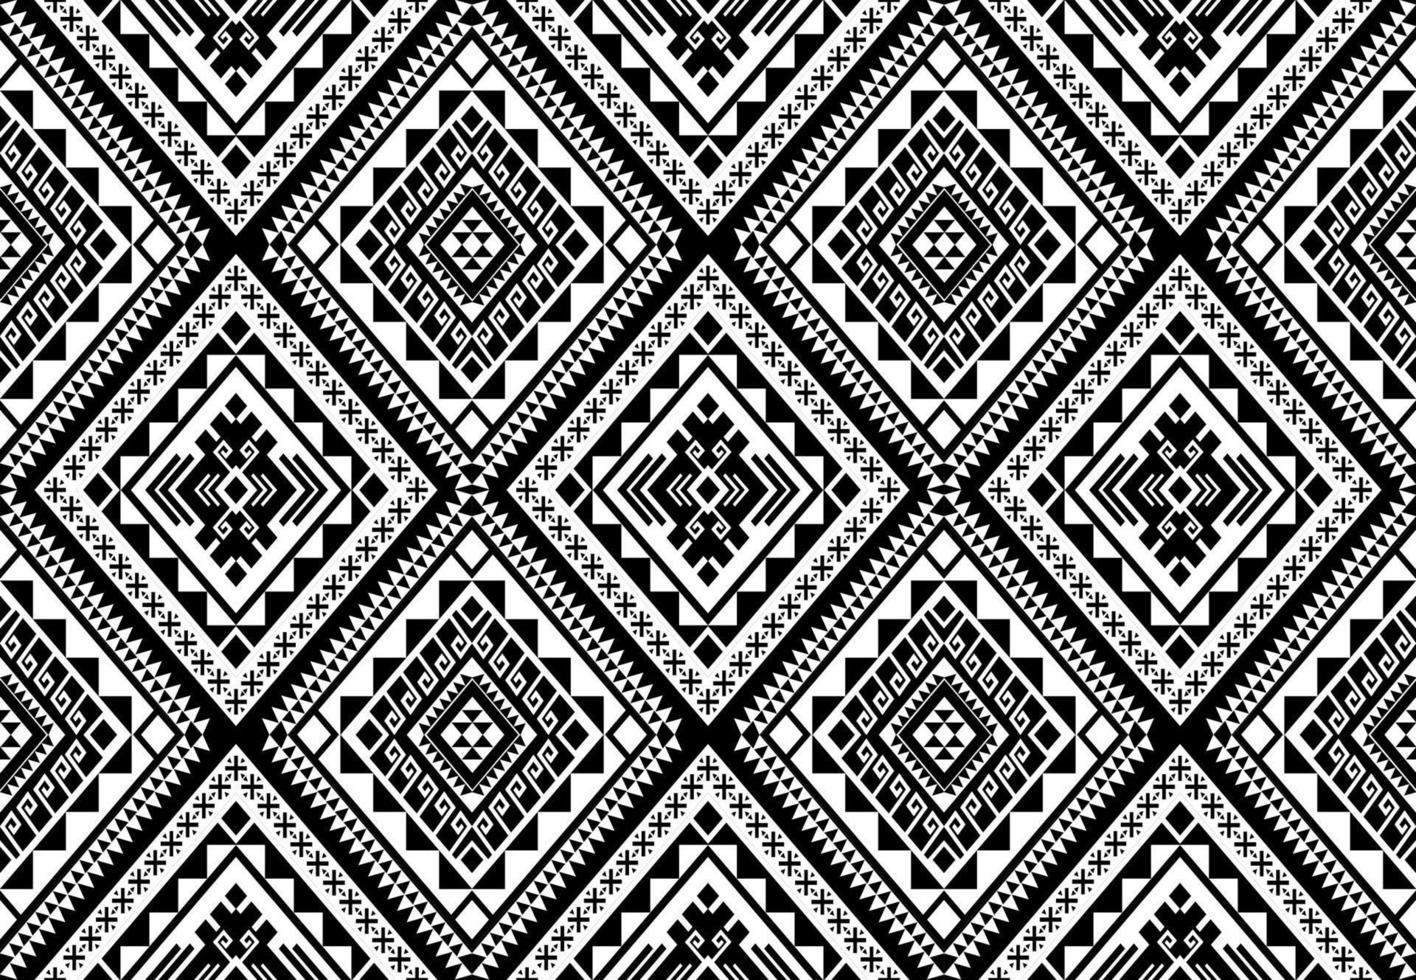 étnico sem costura padrão geométrico tradicional preto e branco. design para plano de fundo,tapete,papel de parede,vestuário,embrulho,batic,tecido,vetor estilo illustraion.embroidery. vetor